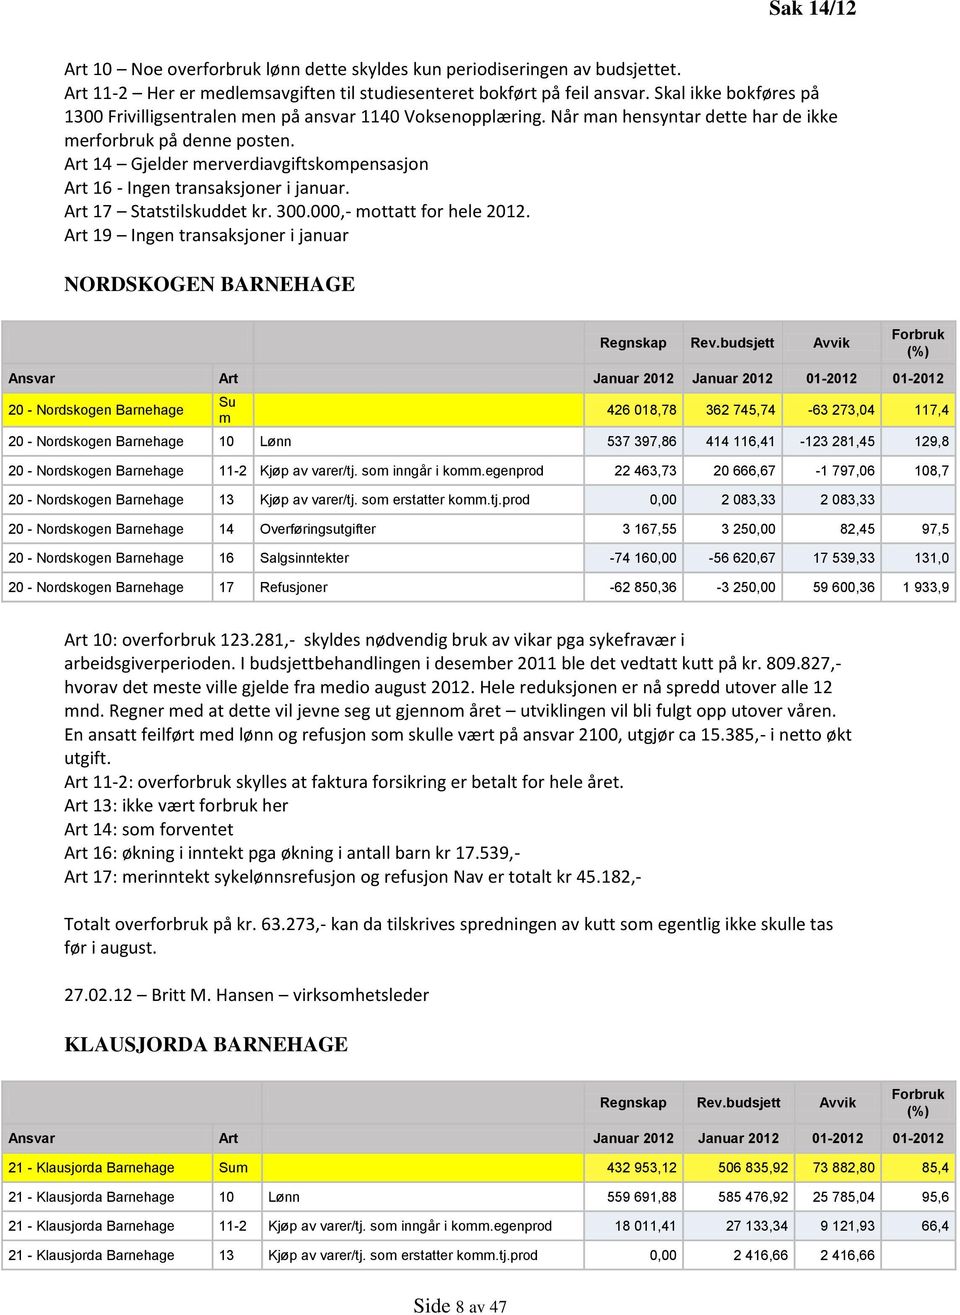 Art 14 Gjelder merverdiavgiftskompensasjon Art 16 - Ingen transaksjoner i januar. Art 17 Statstilskuddet kr. 300.000,- mottatt for hele 2012.